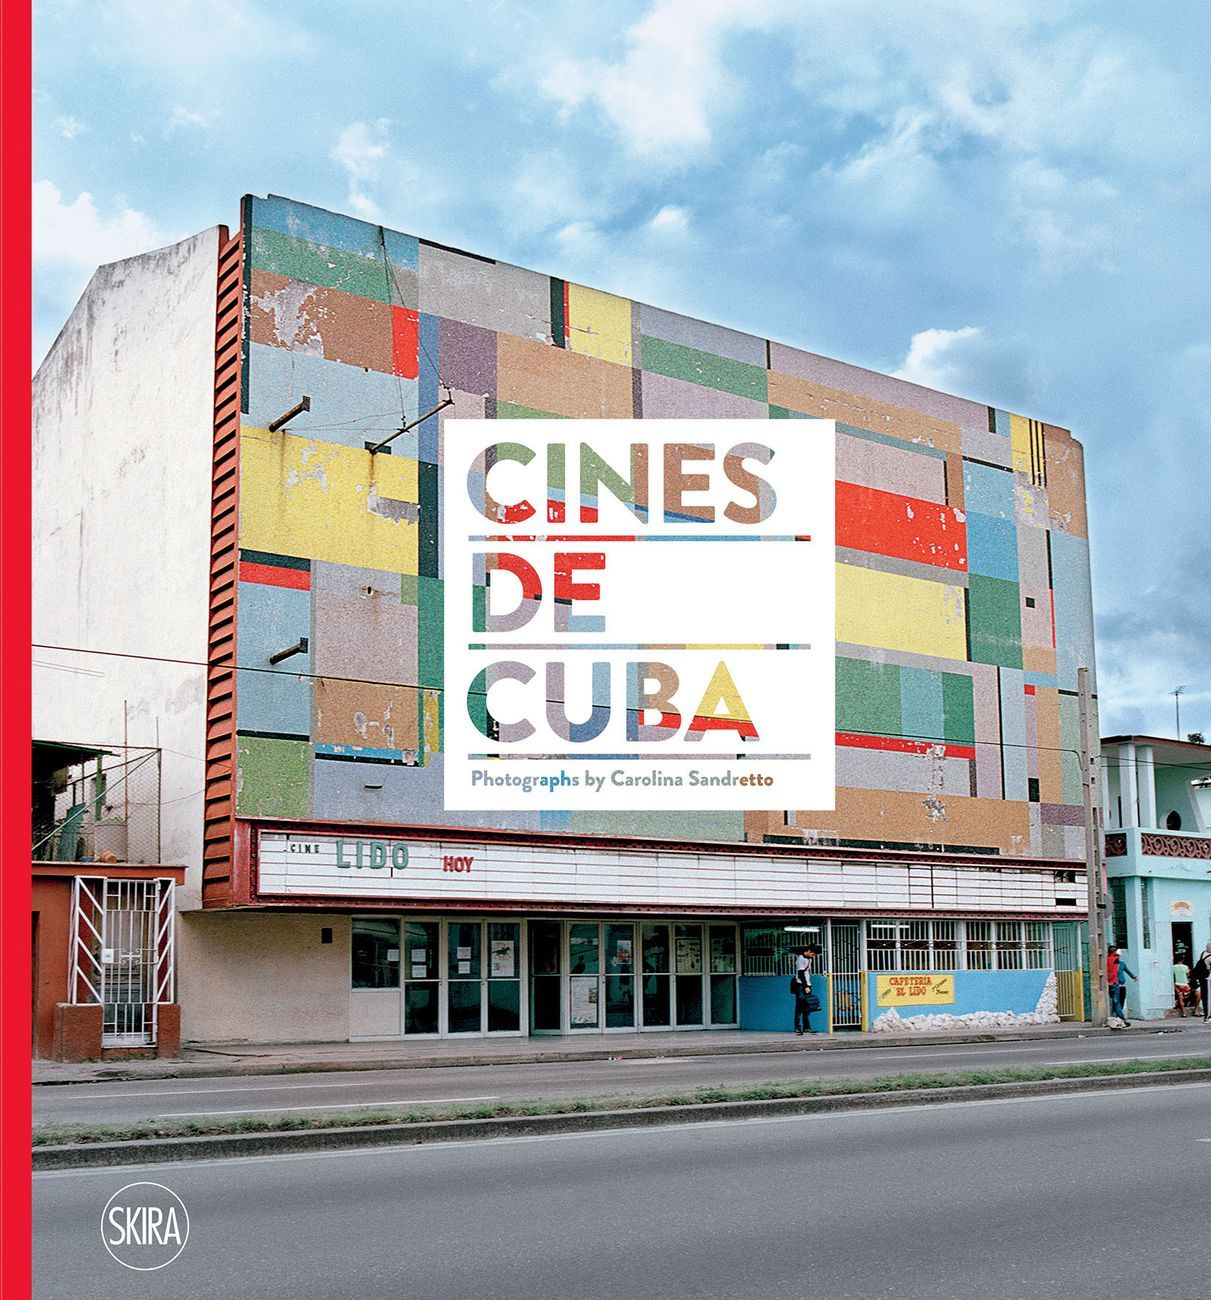 Carolina Sandretto – Cines de Cuba (Skira, Milano 2017)